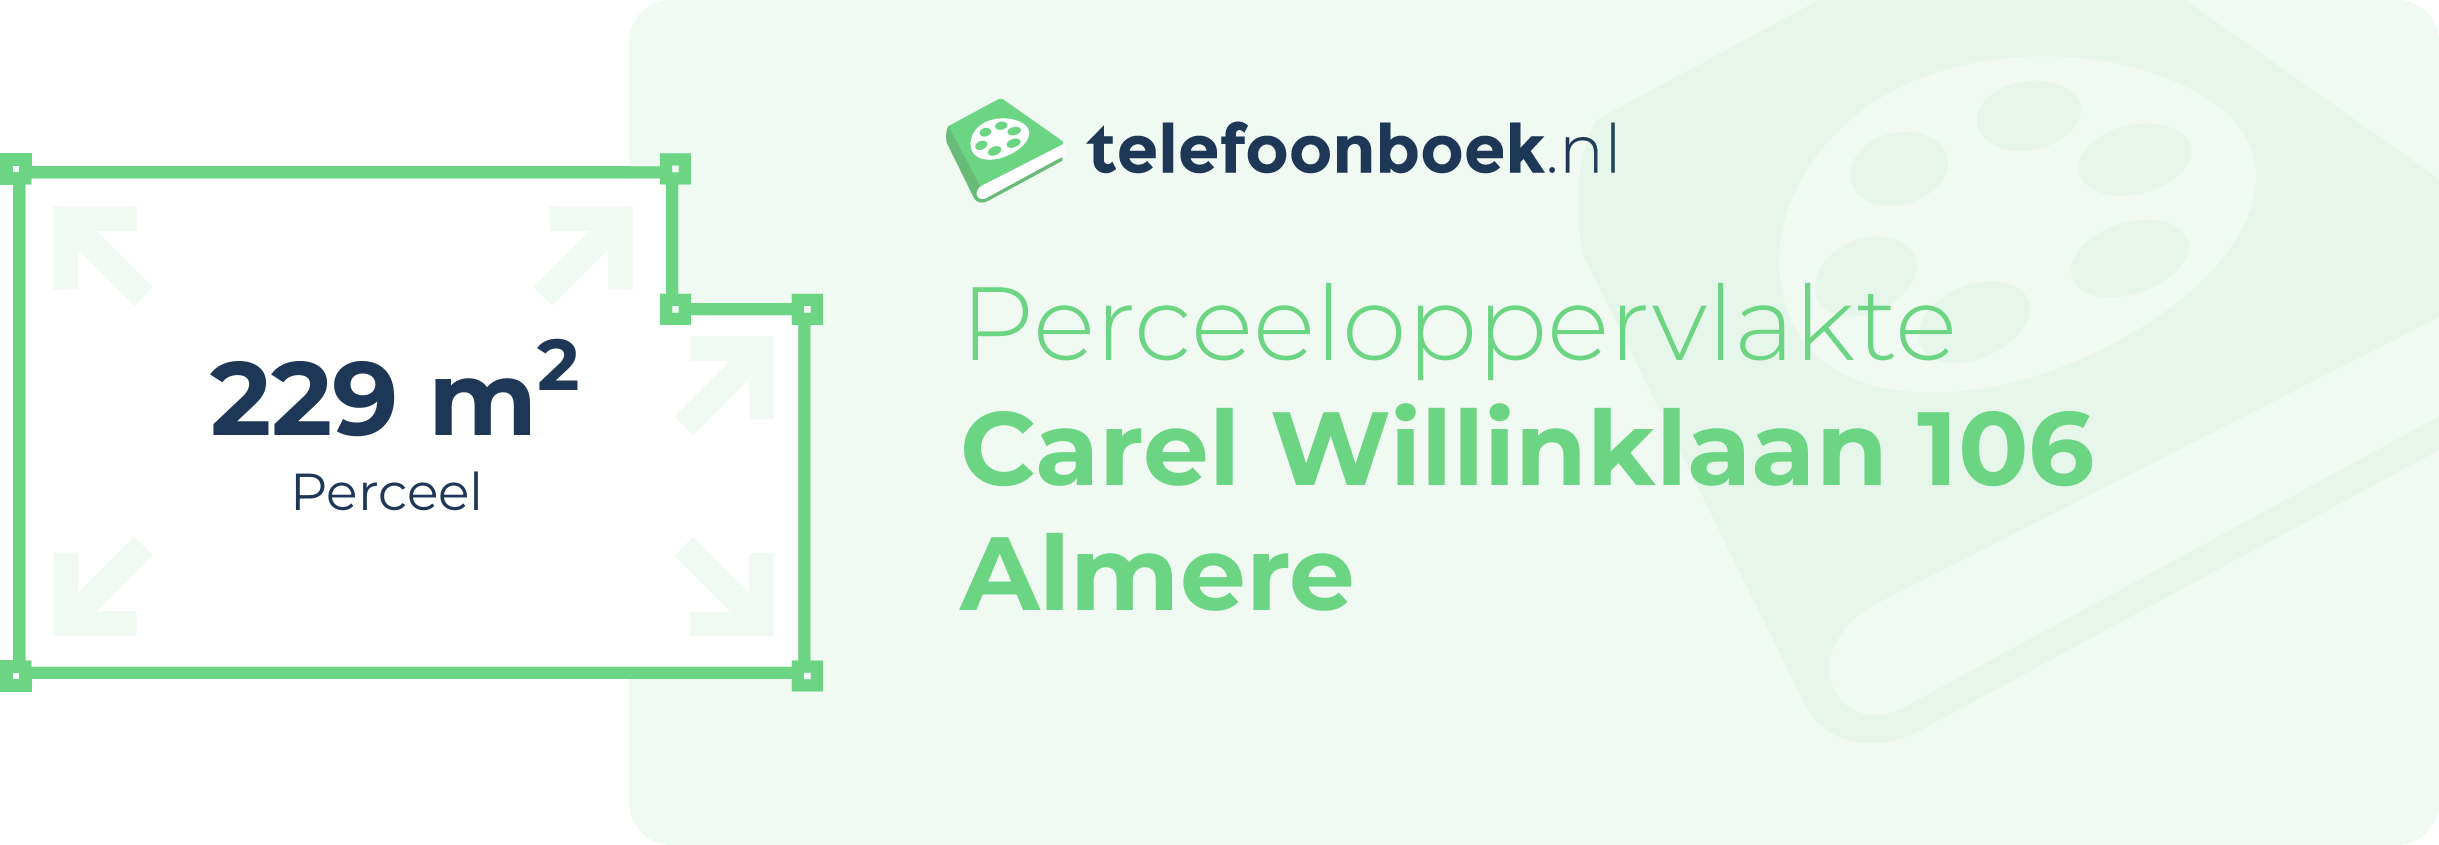 Perceeloppervlakte Carel Willinklaan 106 Almere